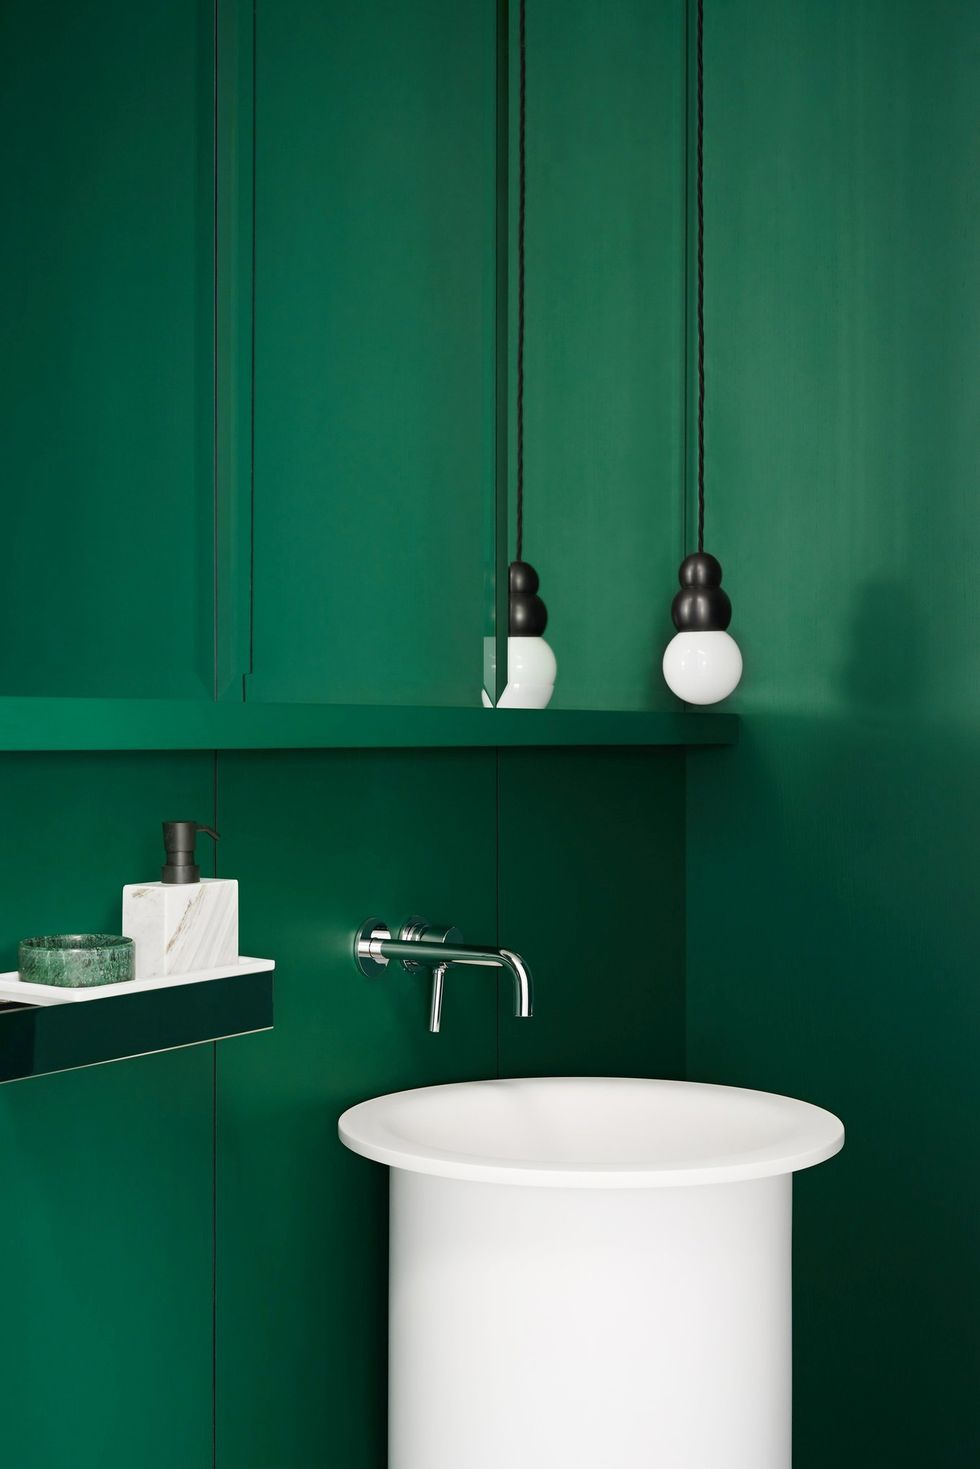 Hình ảnh phòng tắm với sắc xanh lá cây bao phủ tường, bồn rửa và đèn thả màu trắng nổi bật